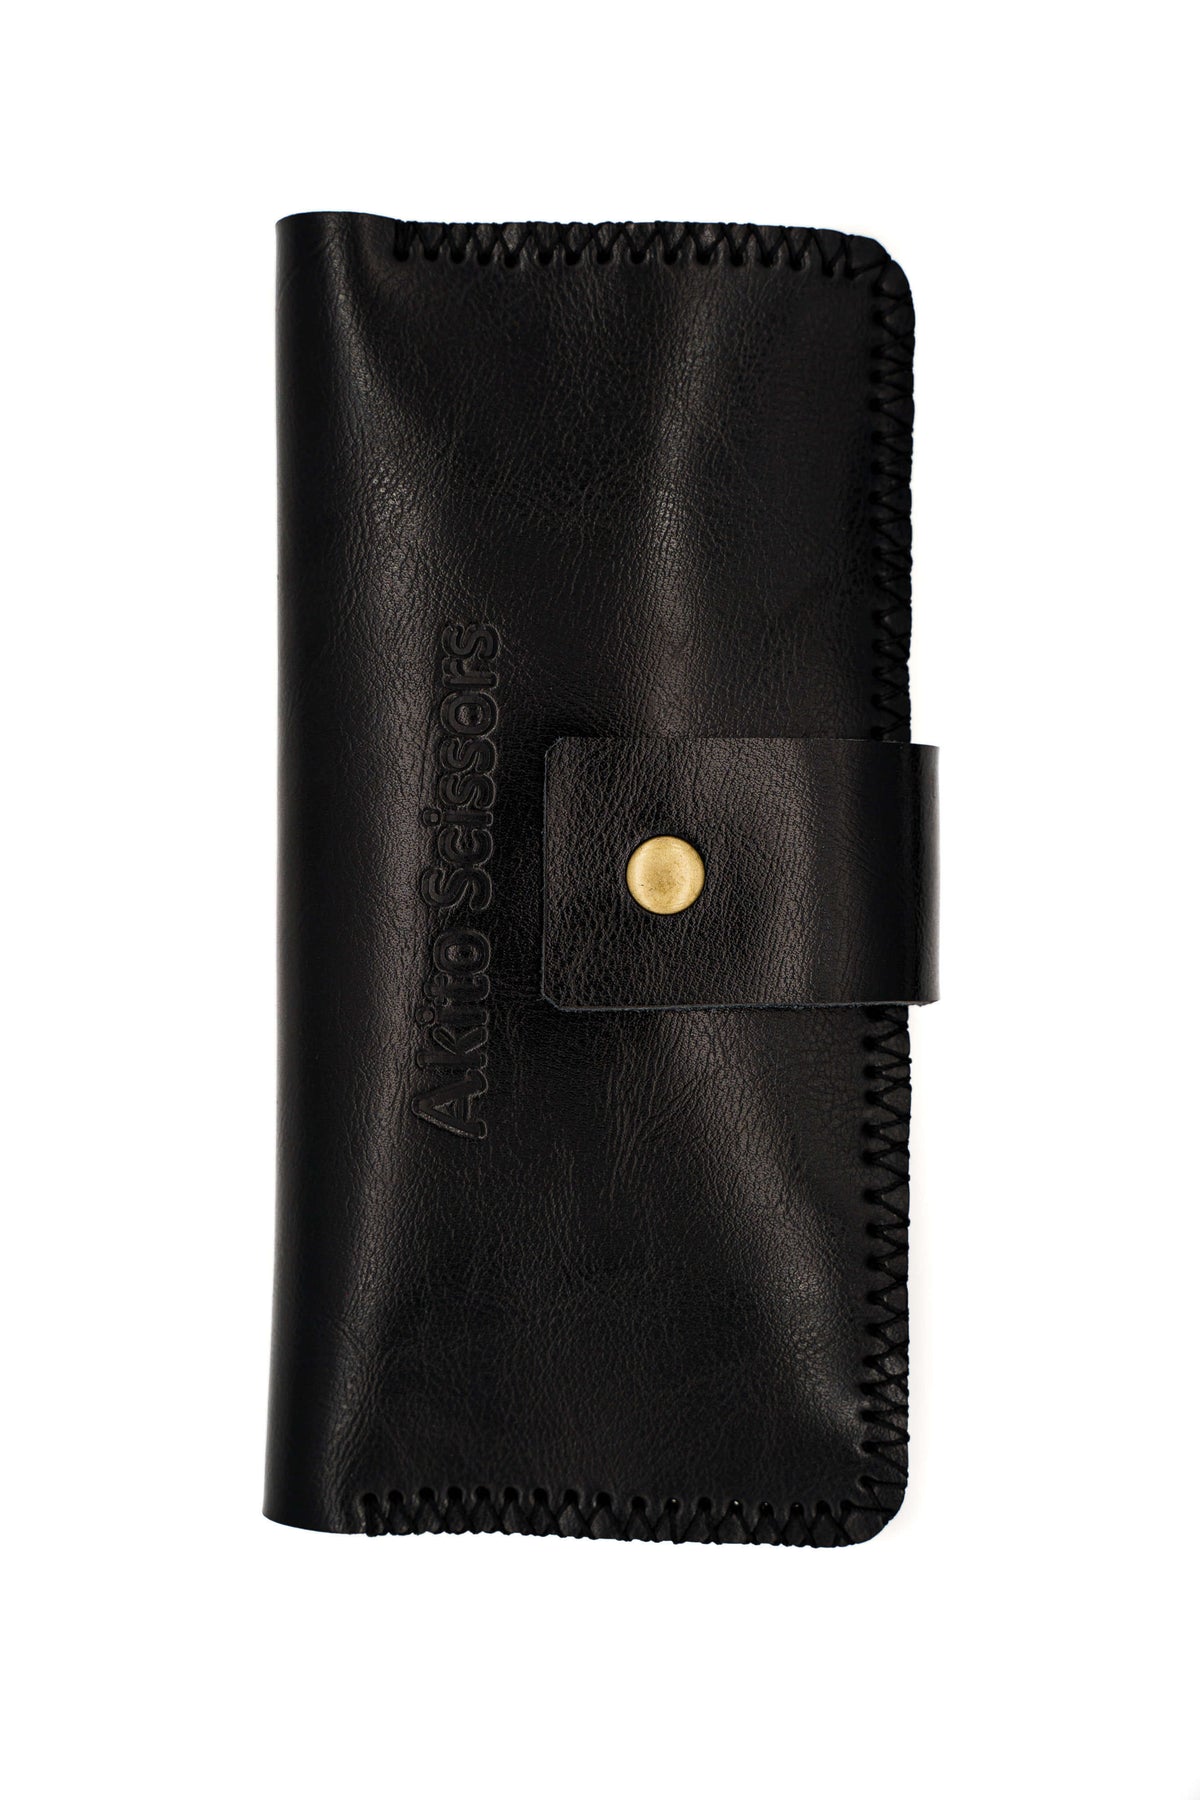 Black leather 4pc-scissors cases